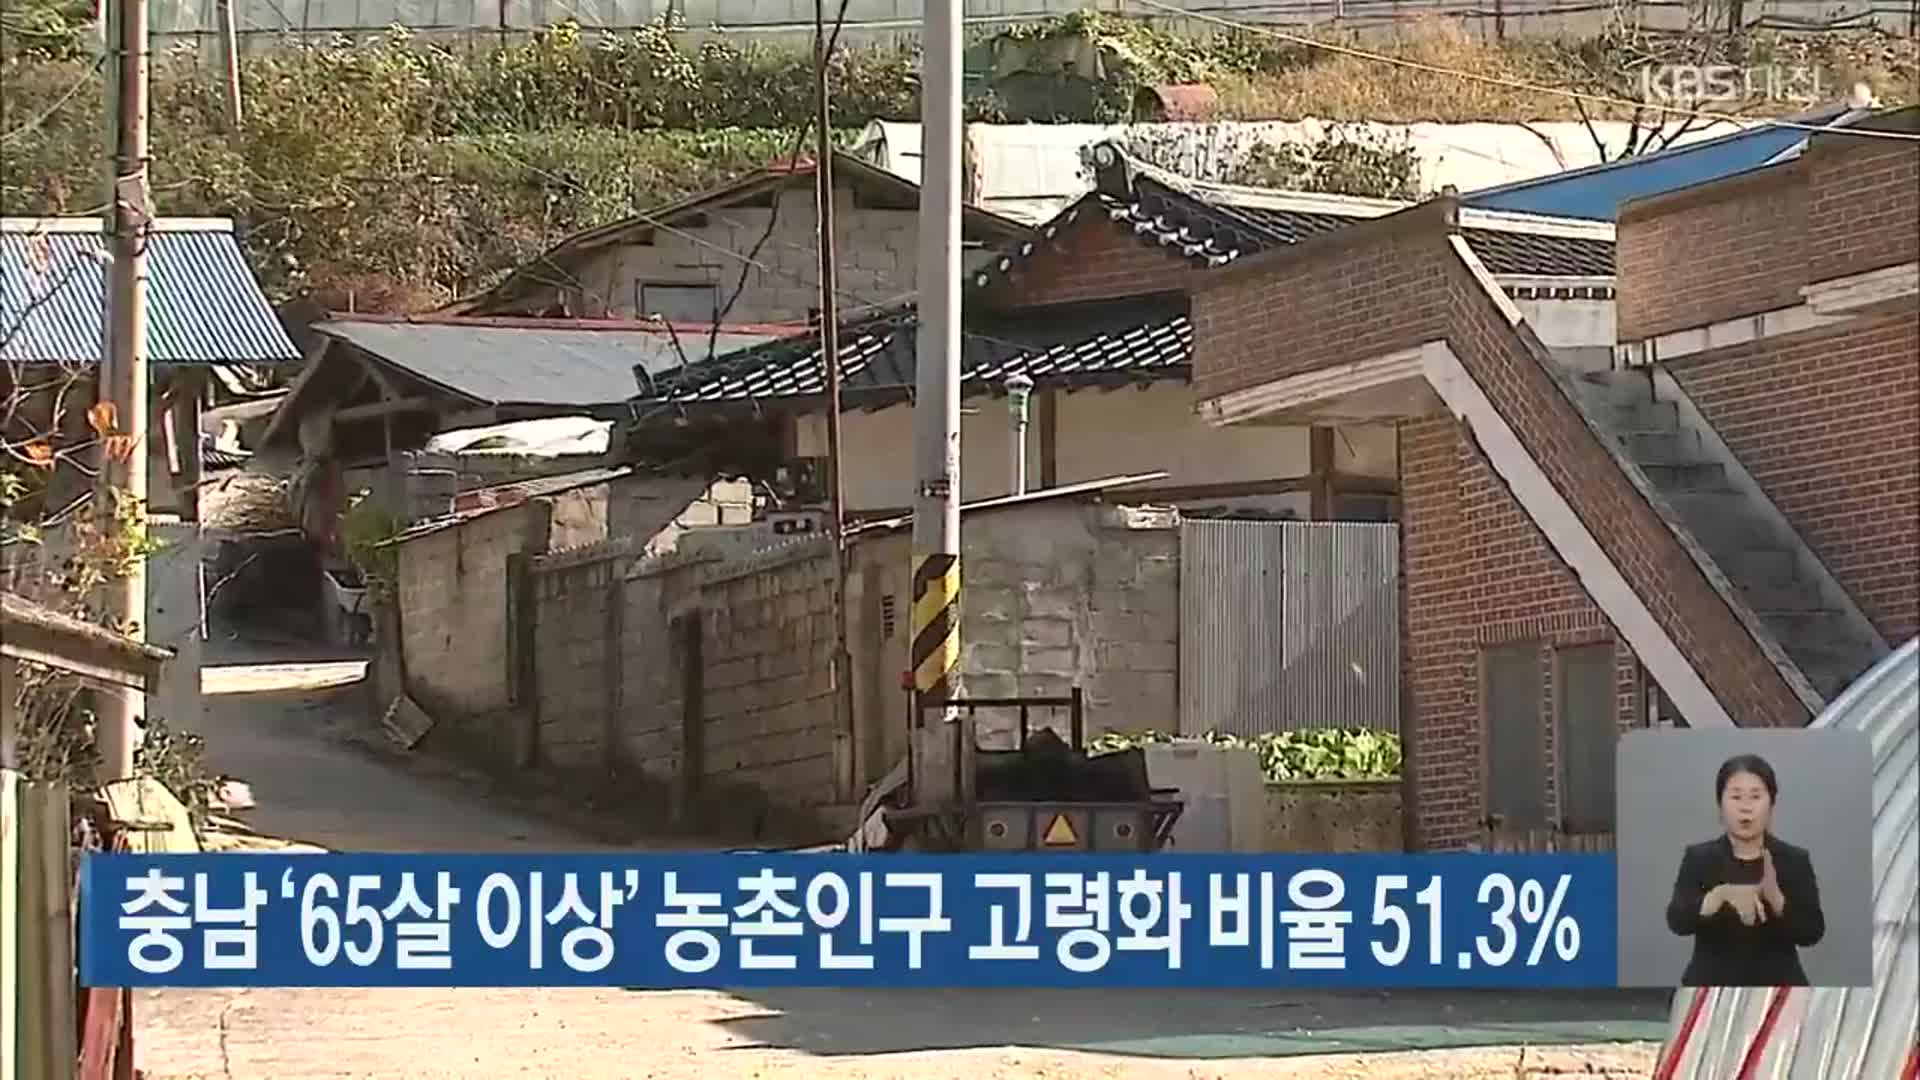 충남 ‘65살 이상’ 농촌인구 고령화 비율 51.3%